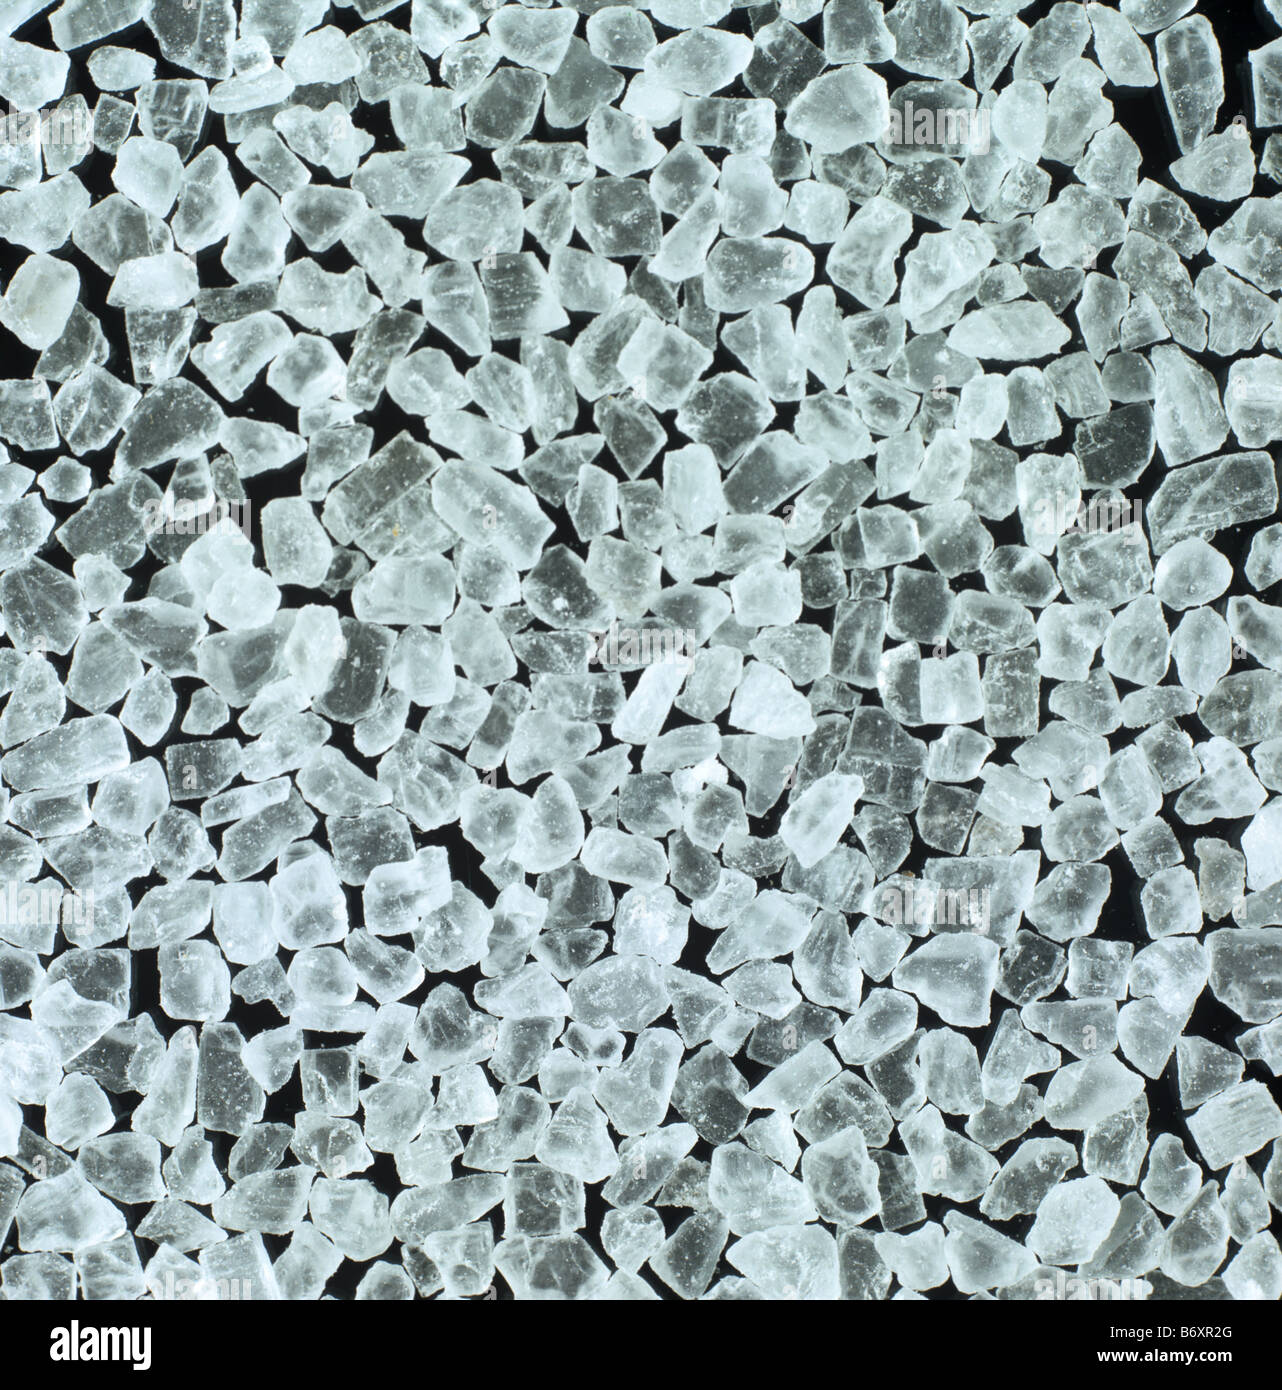 Les cristaux de sel de roche comme acheté pour la cuisine et la préparation des aliments Banque D'Images